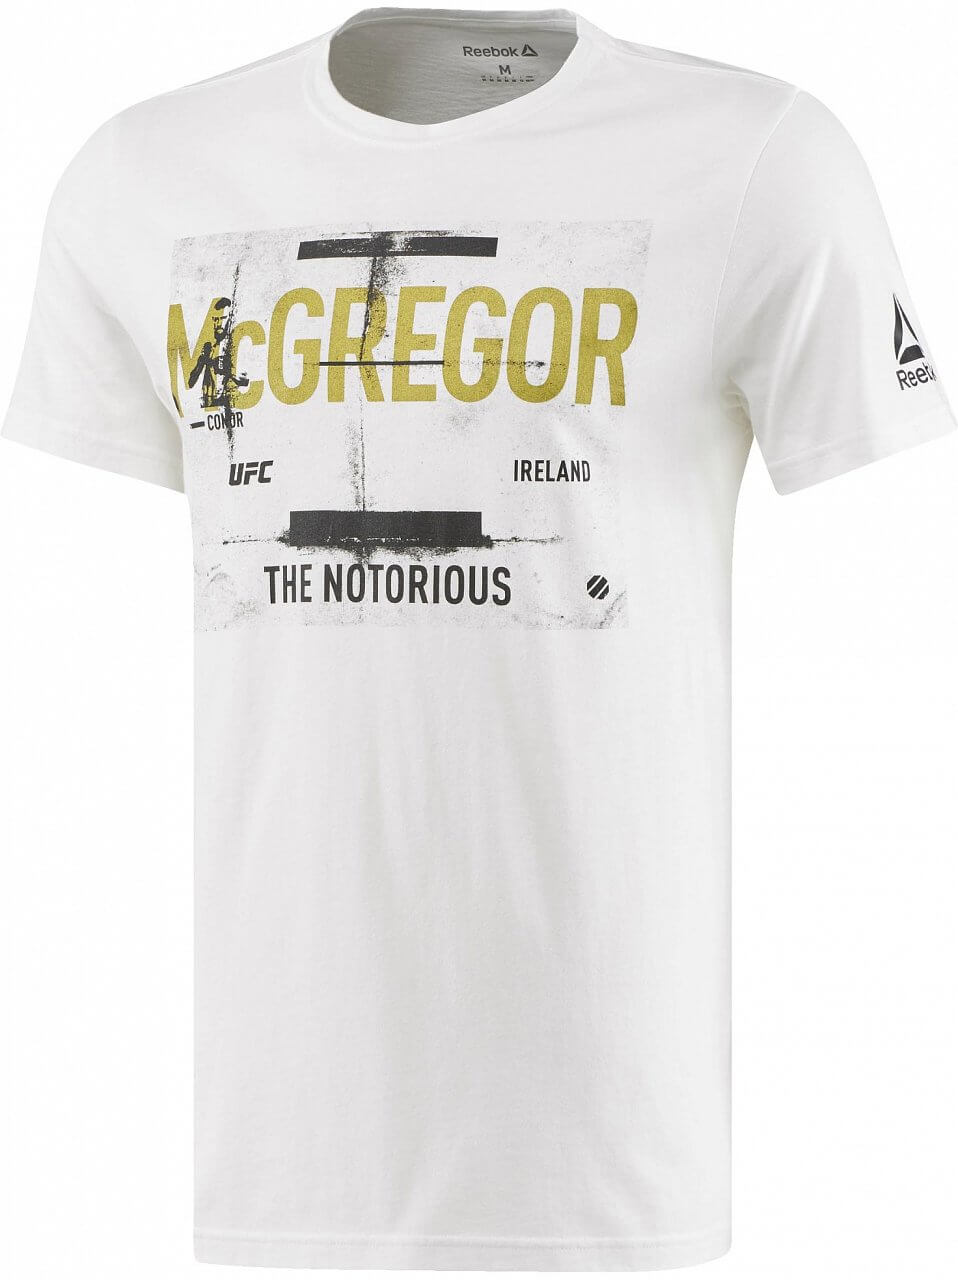 Pánské sportovní tričko Reebok Mcgregor Fighter Tee